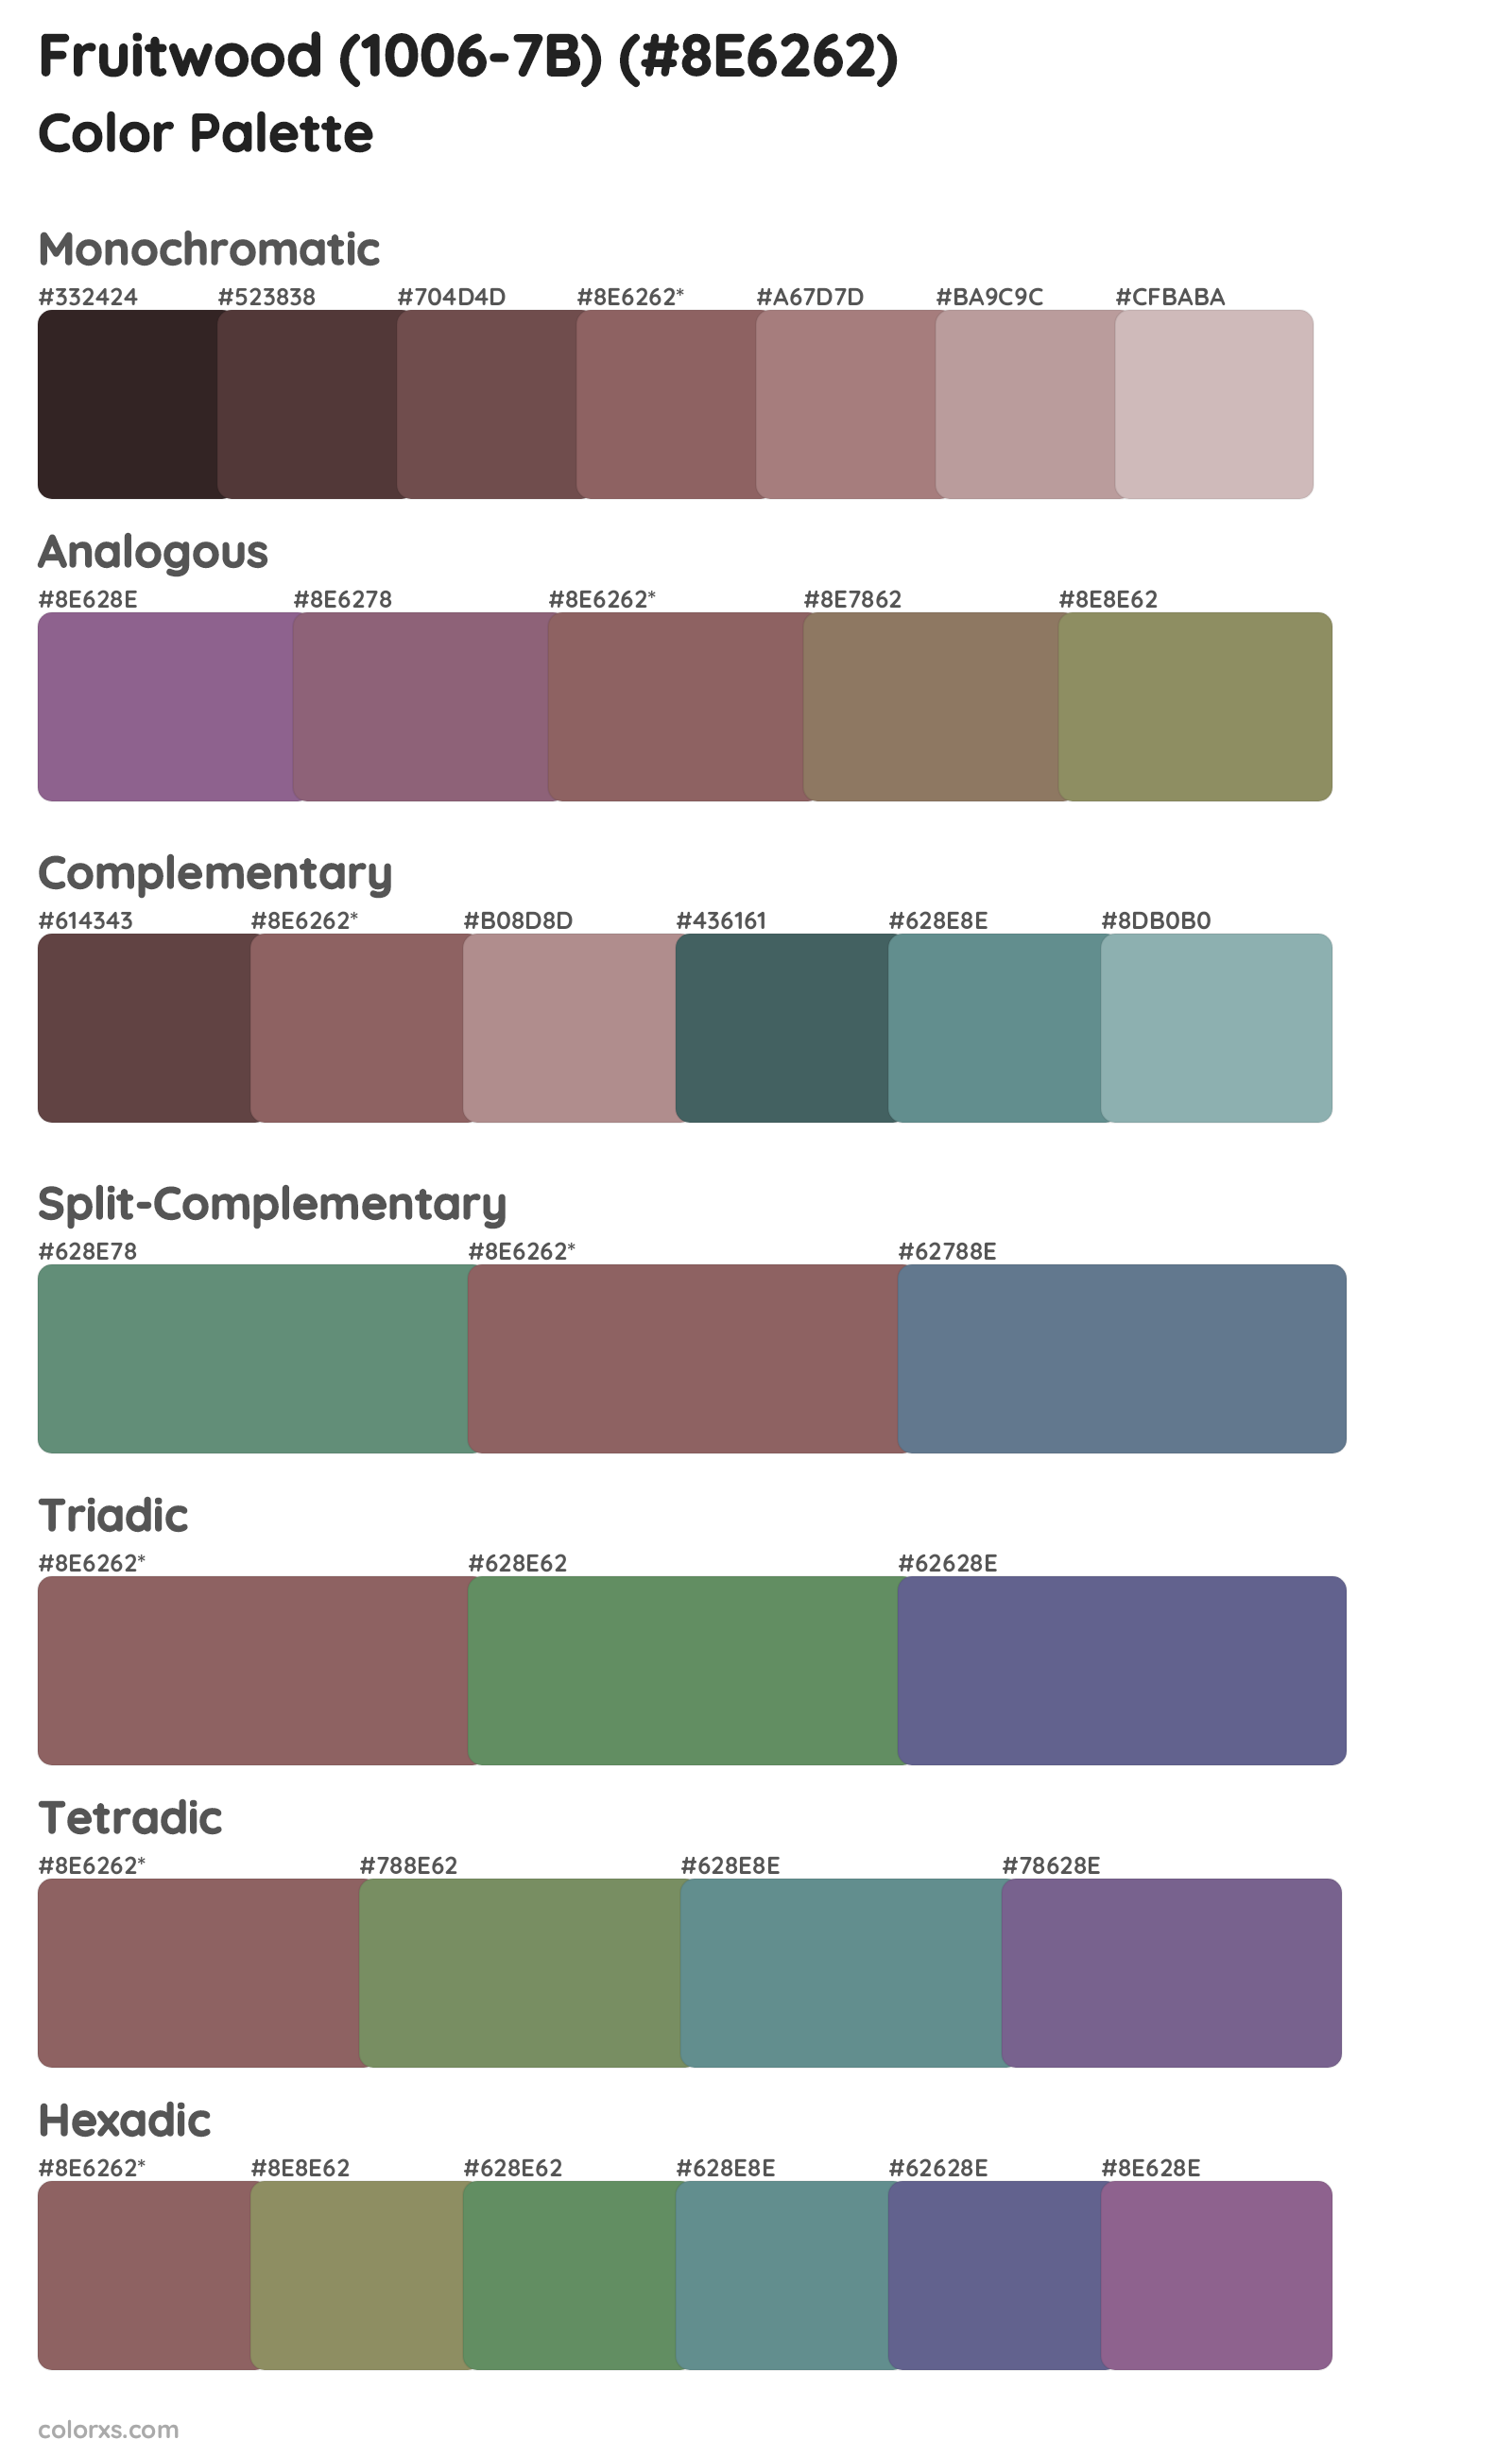 Fruitwood (1006-7B) Color Scheme Palettes